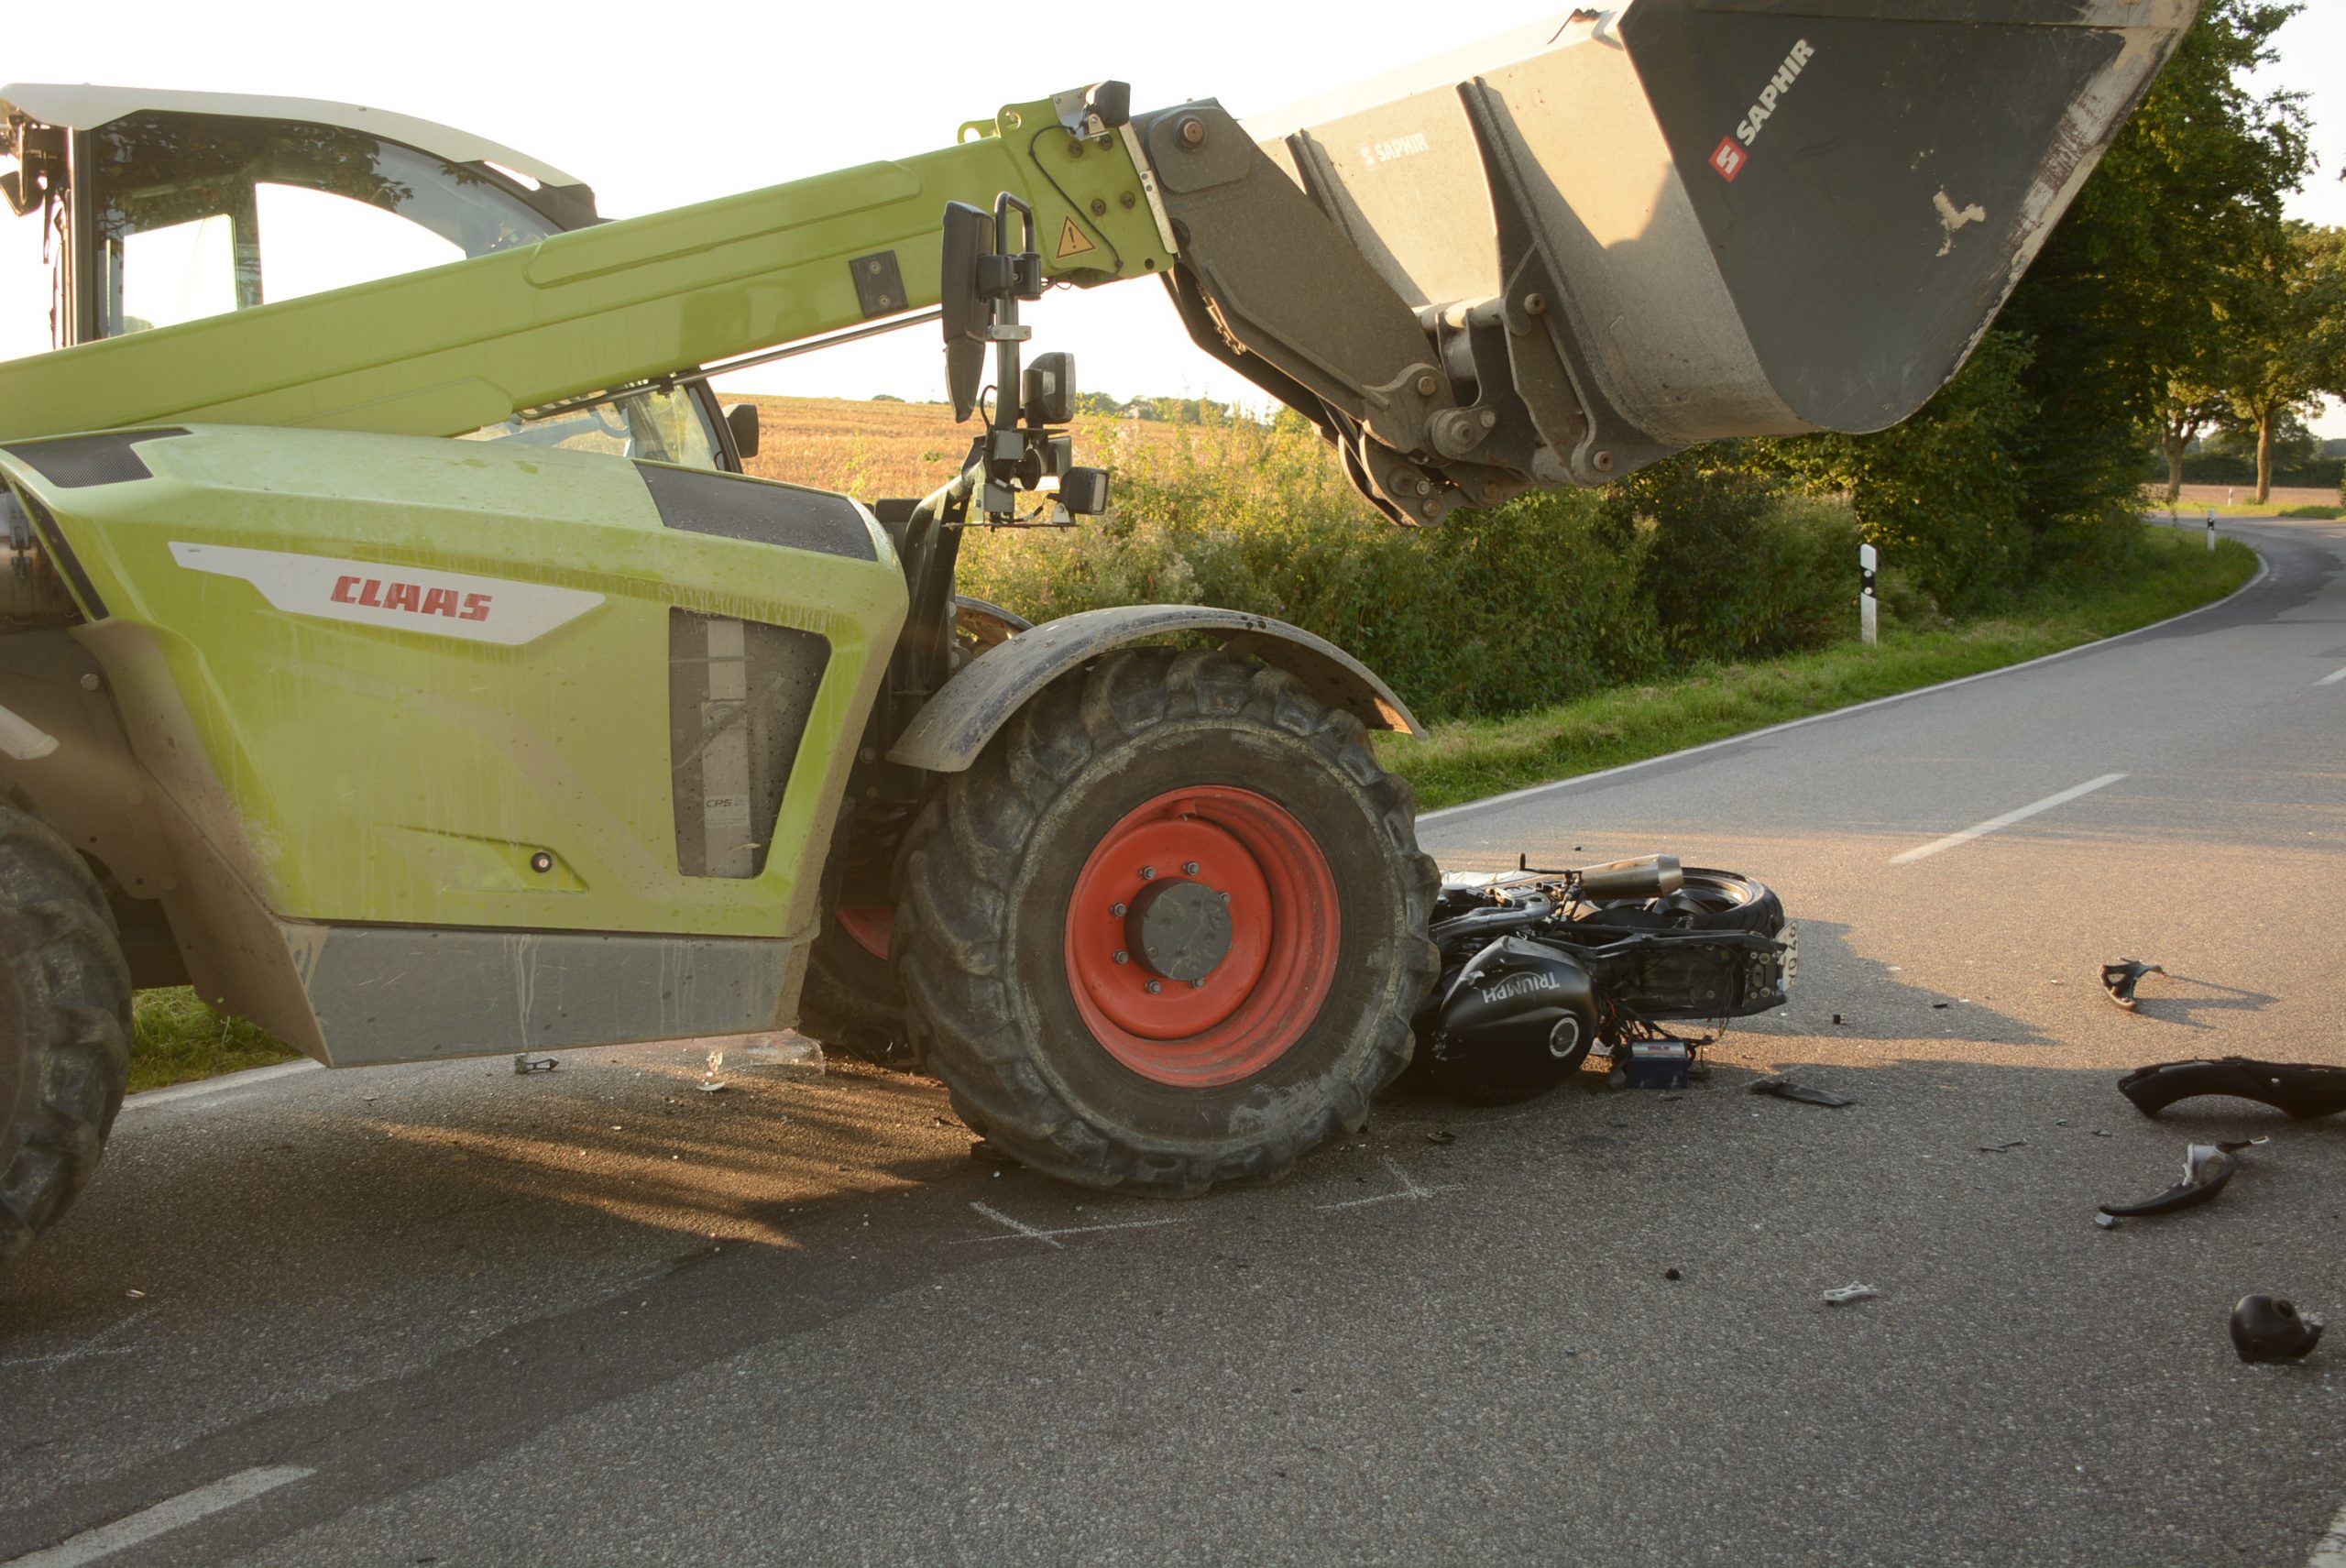 Am Dienstag ist ein Motorradfahrer im Kreis Stormarn mit einem Traktor zusammengestoßen und tödlich verunglückt.